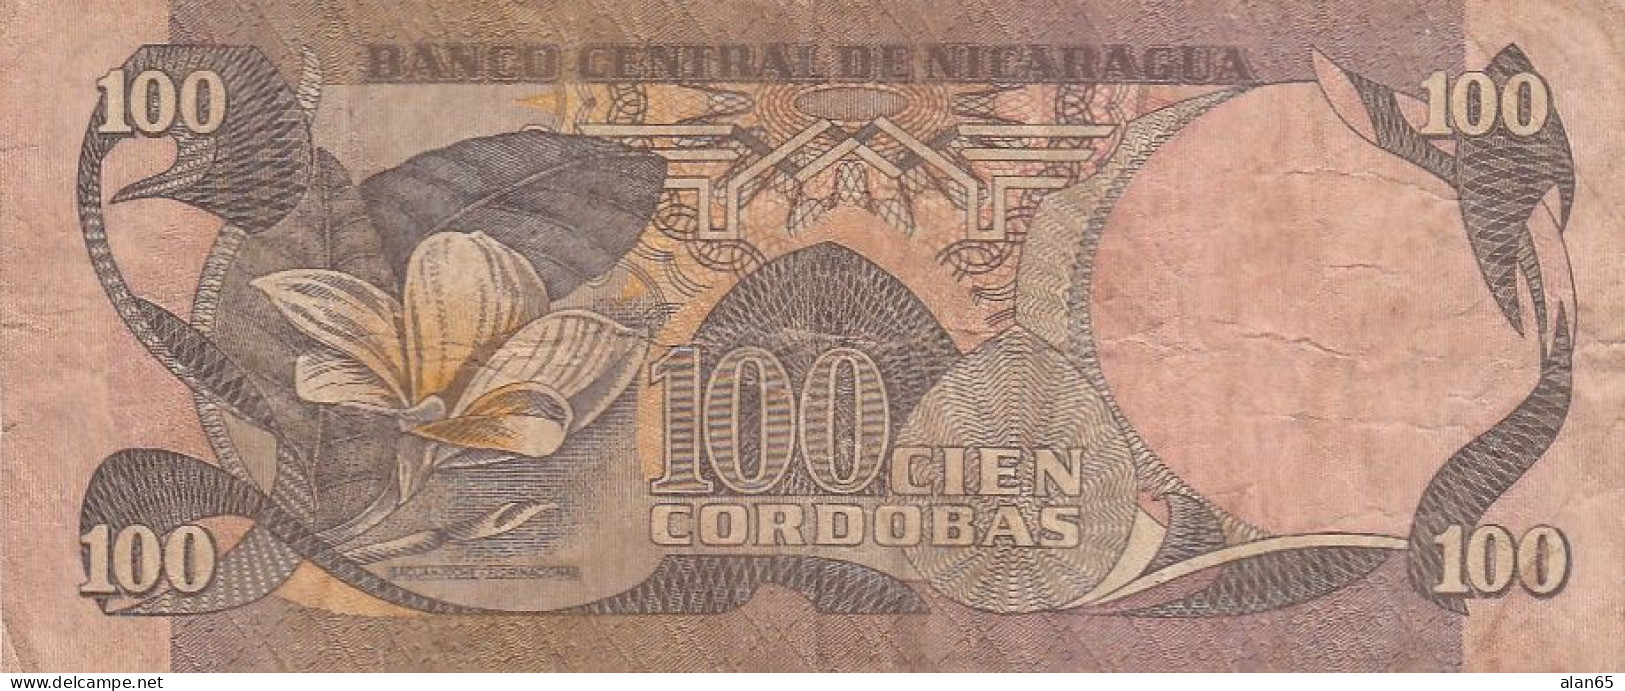 Nicaragua Lot Of 2, #140 50 Cordobas, ##141 100 Cordobas, C1985 Banknotes - Nicaragua